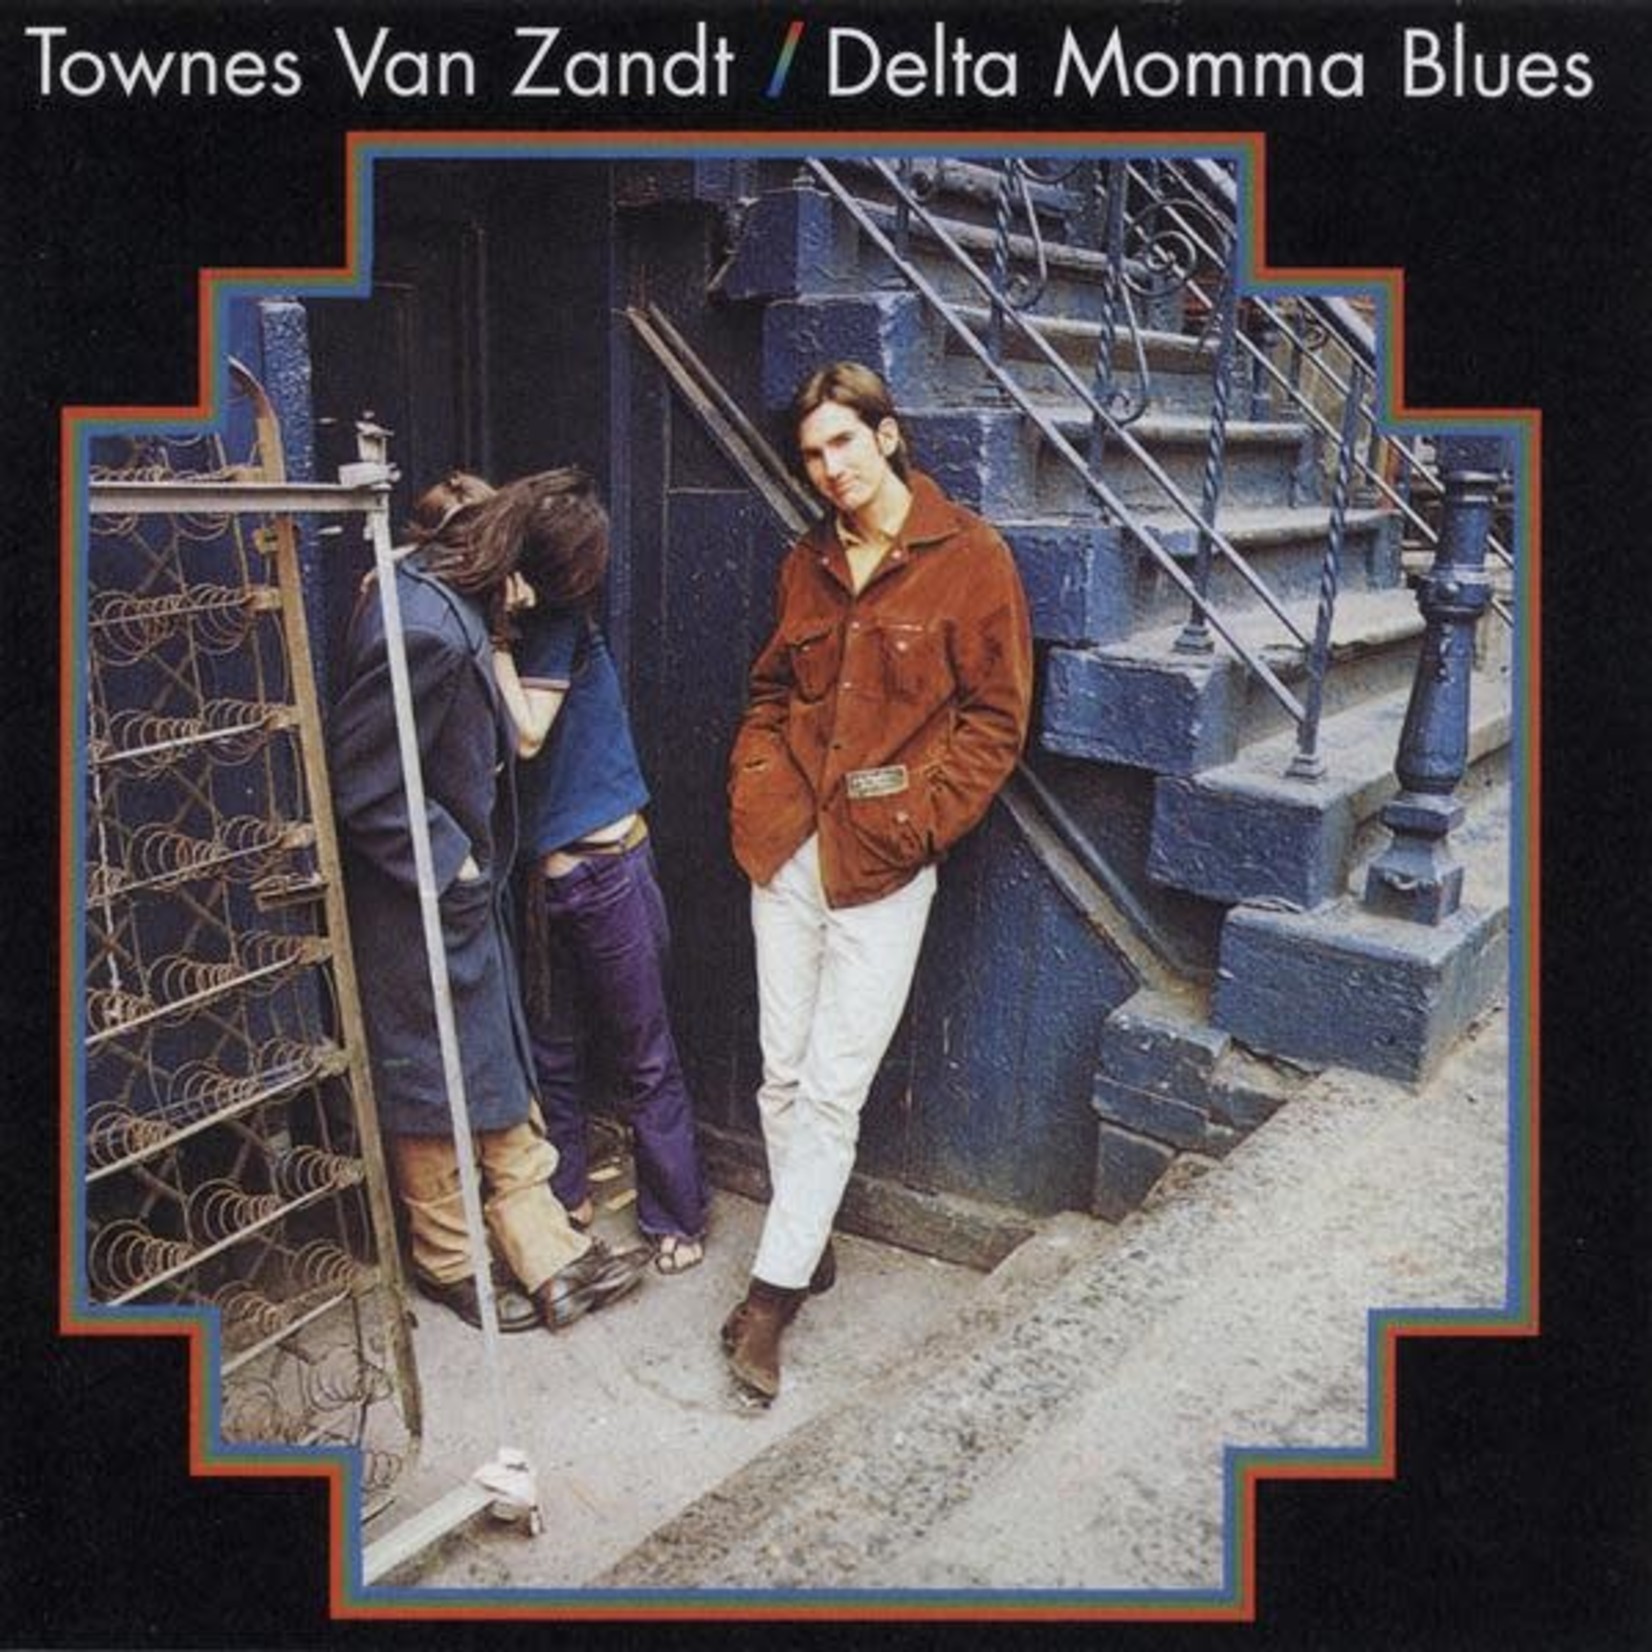 [New] Townes Van Zandt - Delta Momma Blues